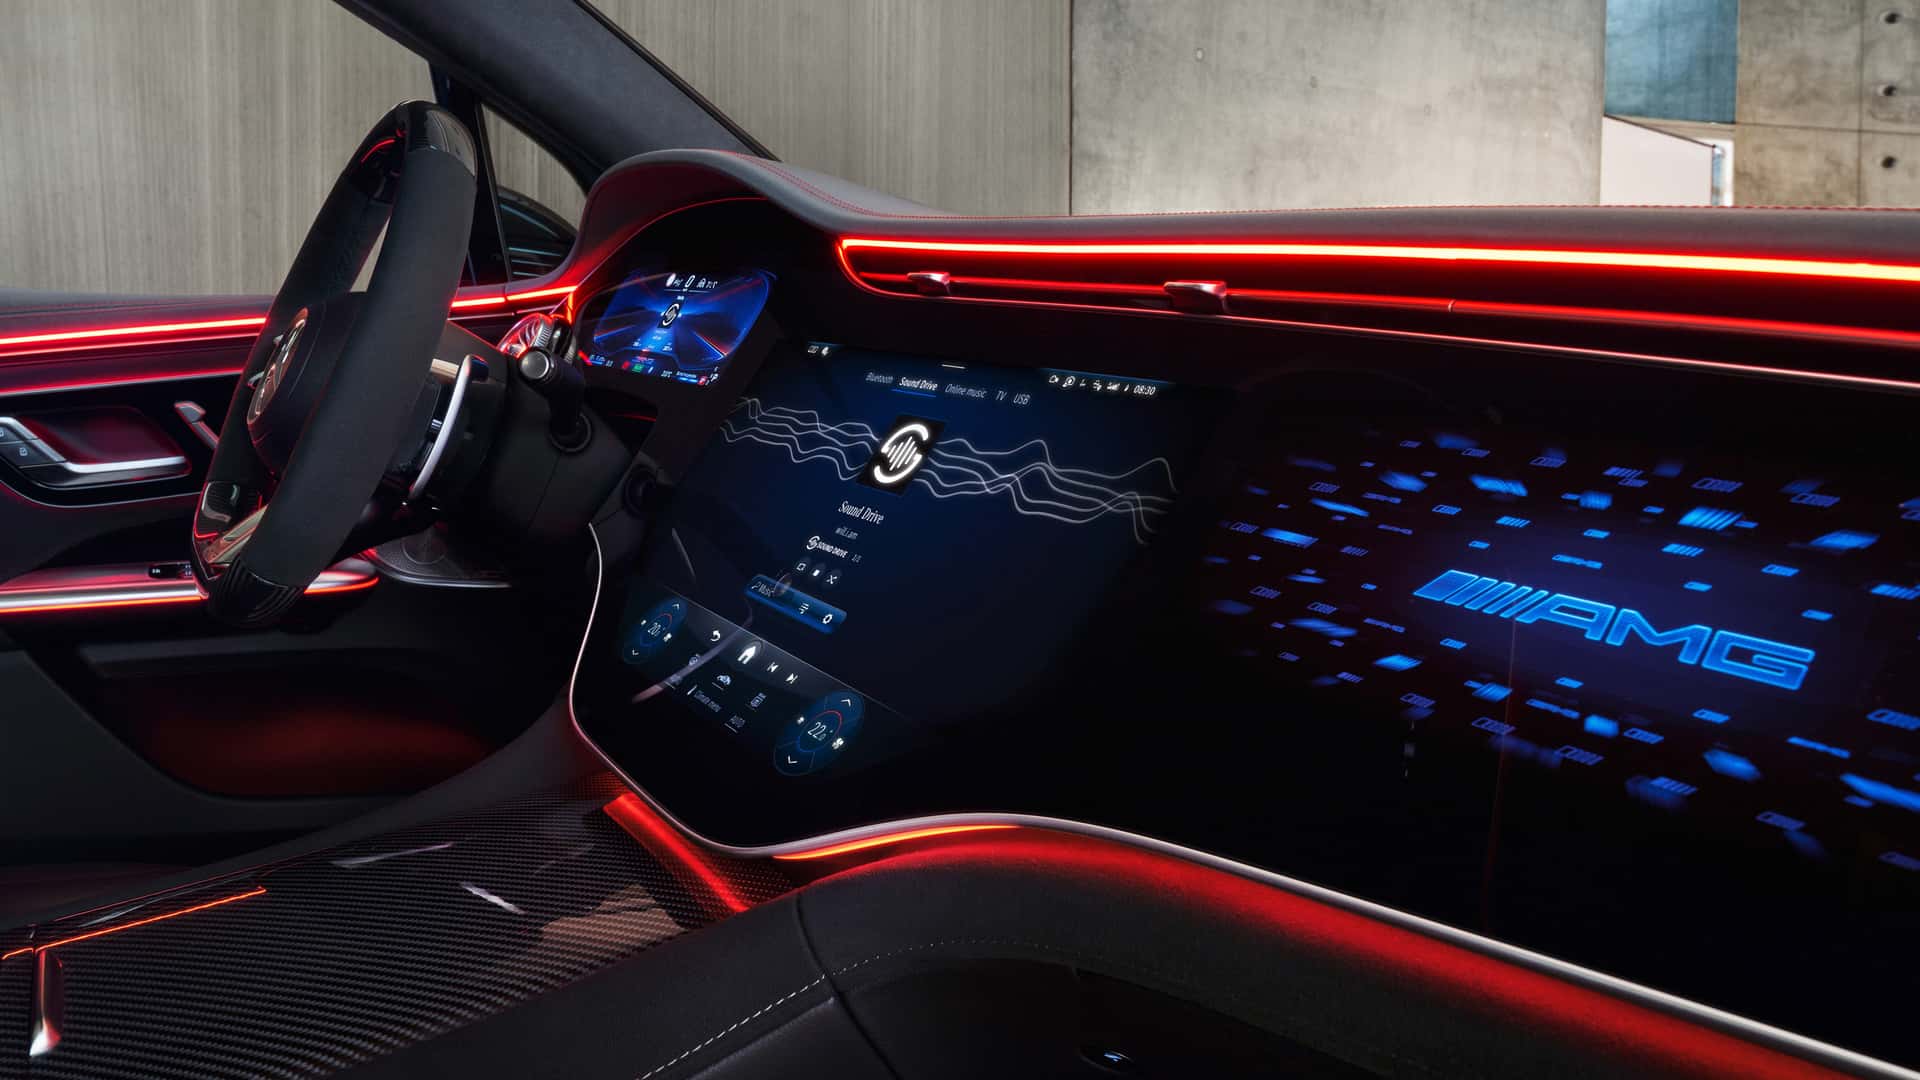 مرسيدس تكشف عن الجيل الجديد من نظام التشغيل لسياراتها بتقنيات مبتكرة جديدة 11